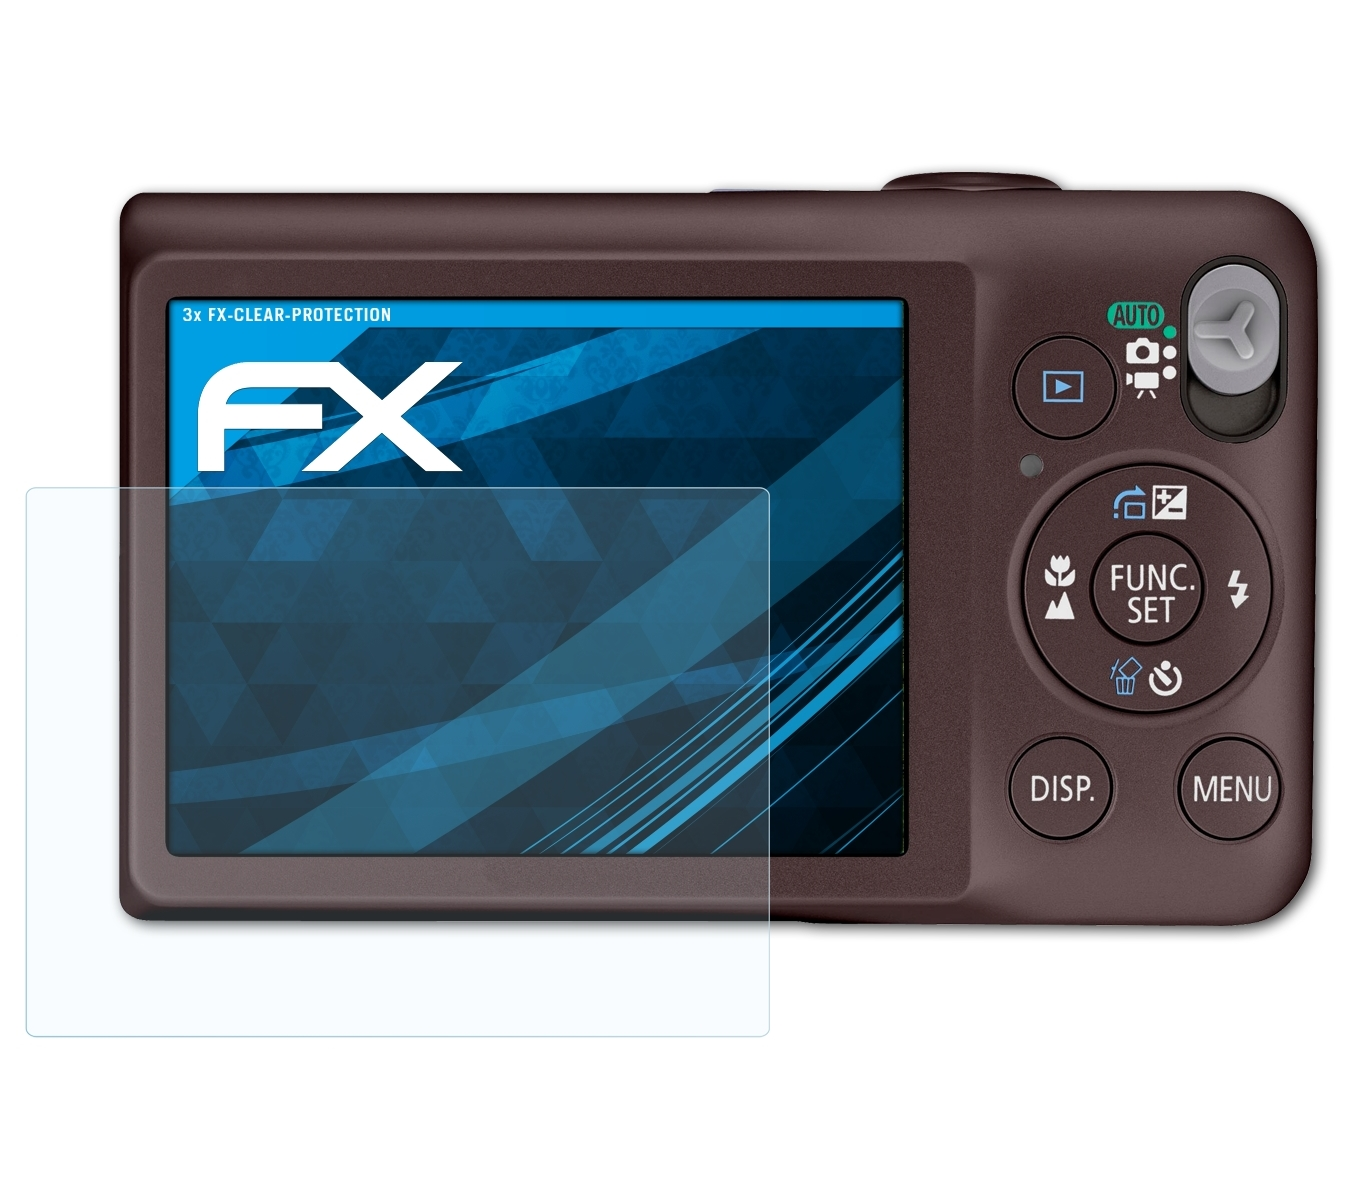 Canon IXUS ATFOLIX Digital FX-Clear Displayschutz(für 105) 3x